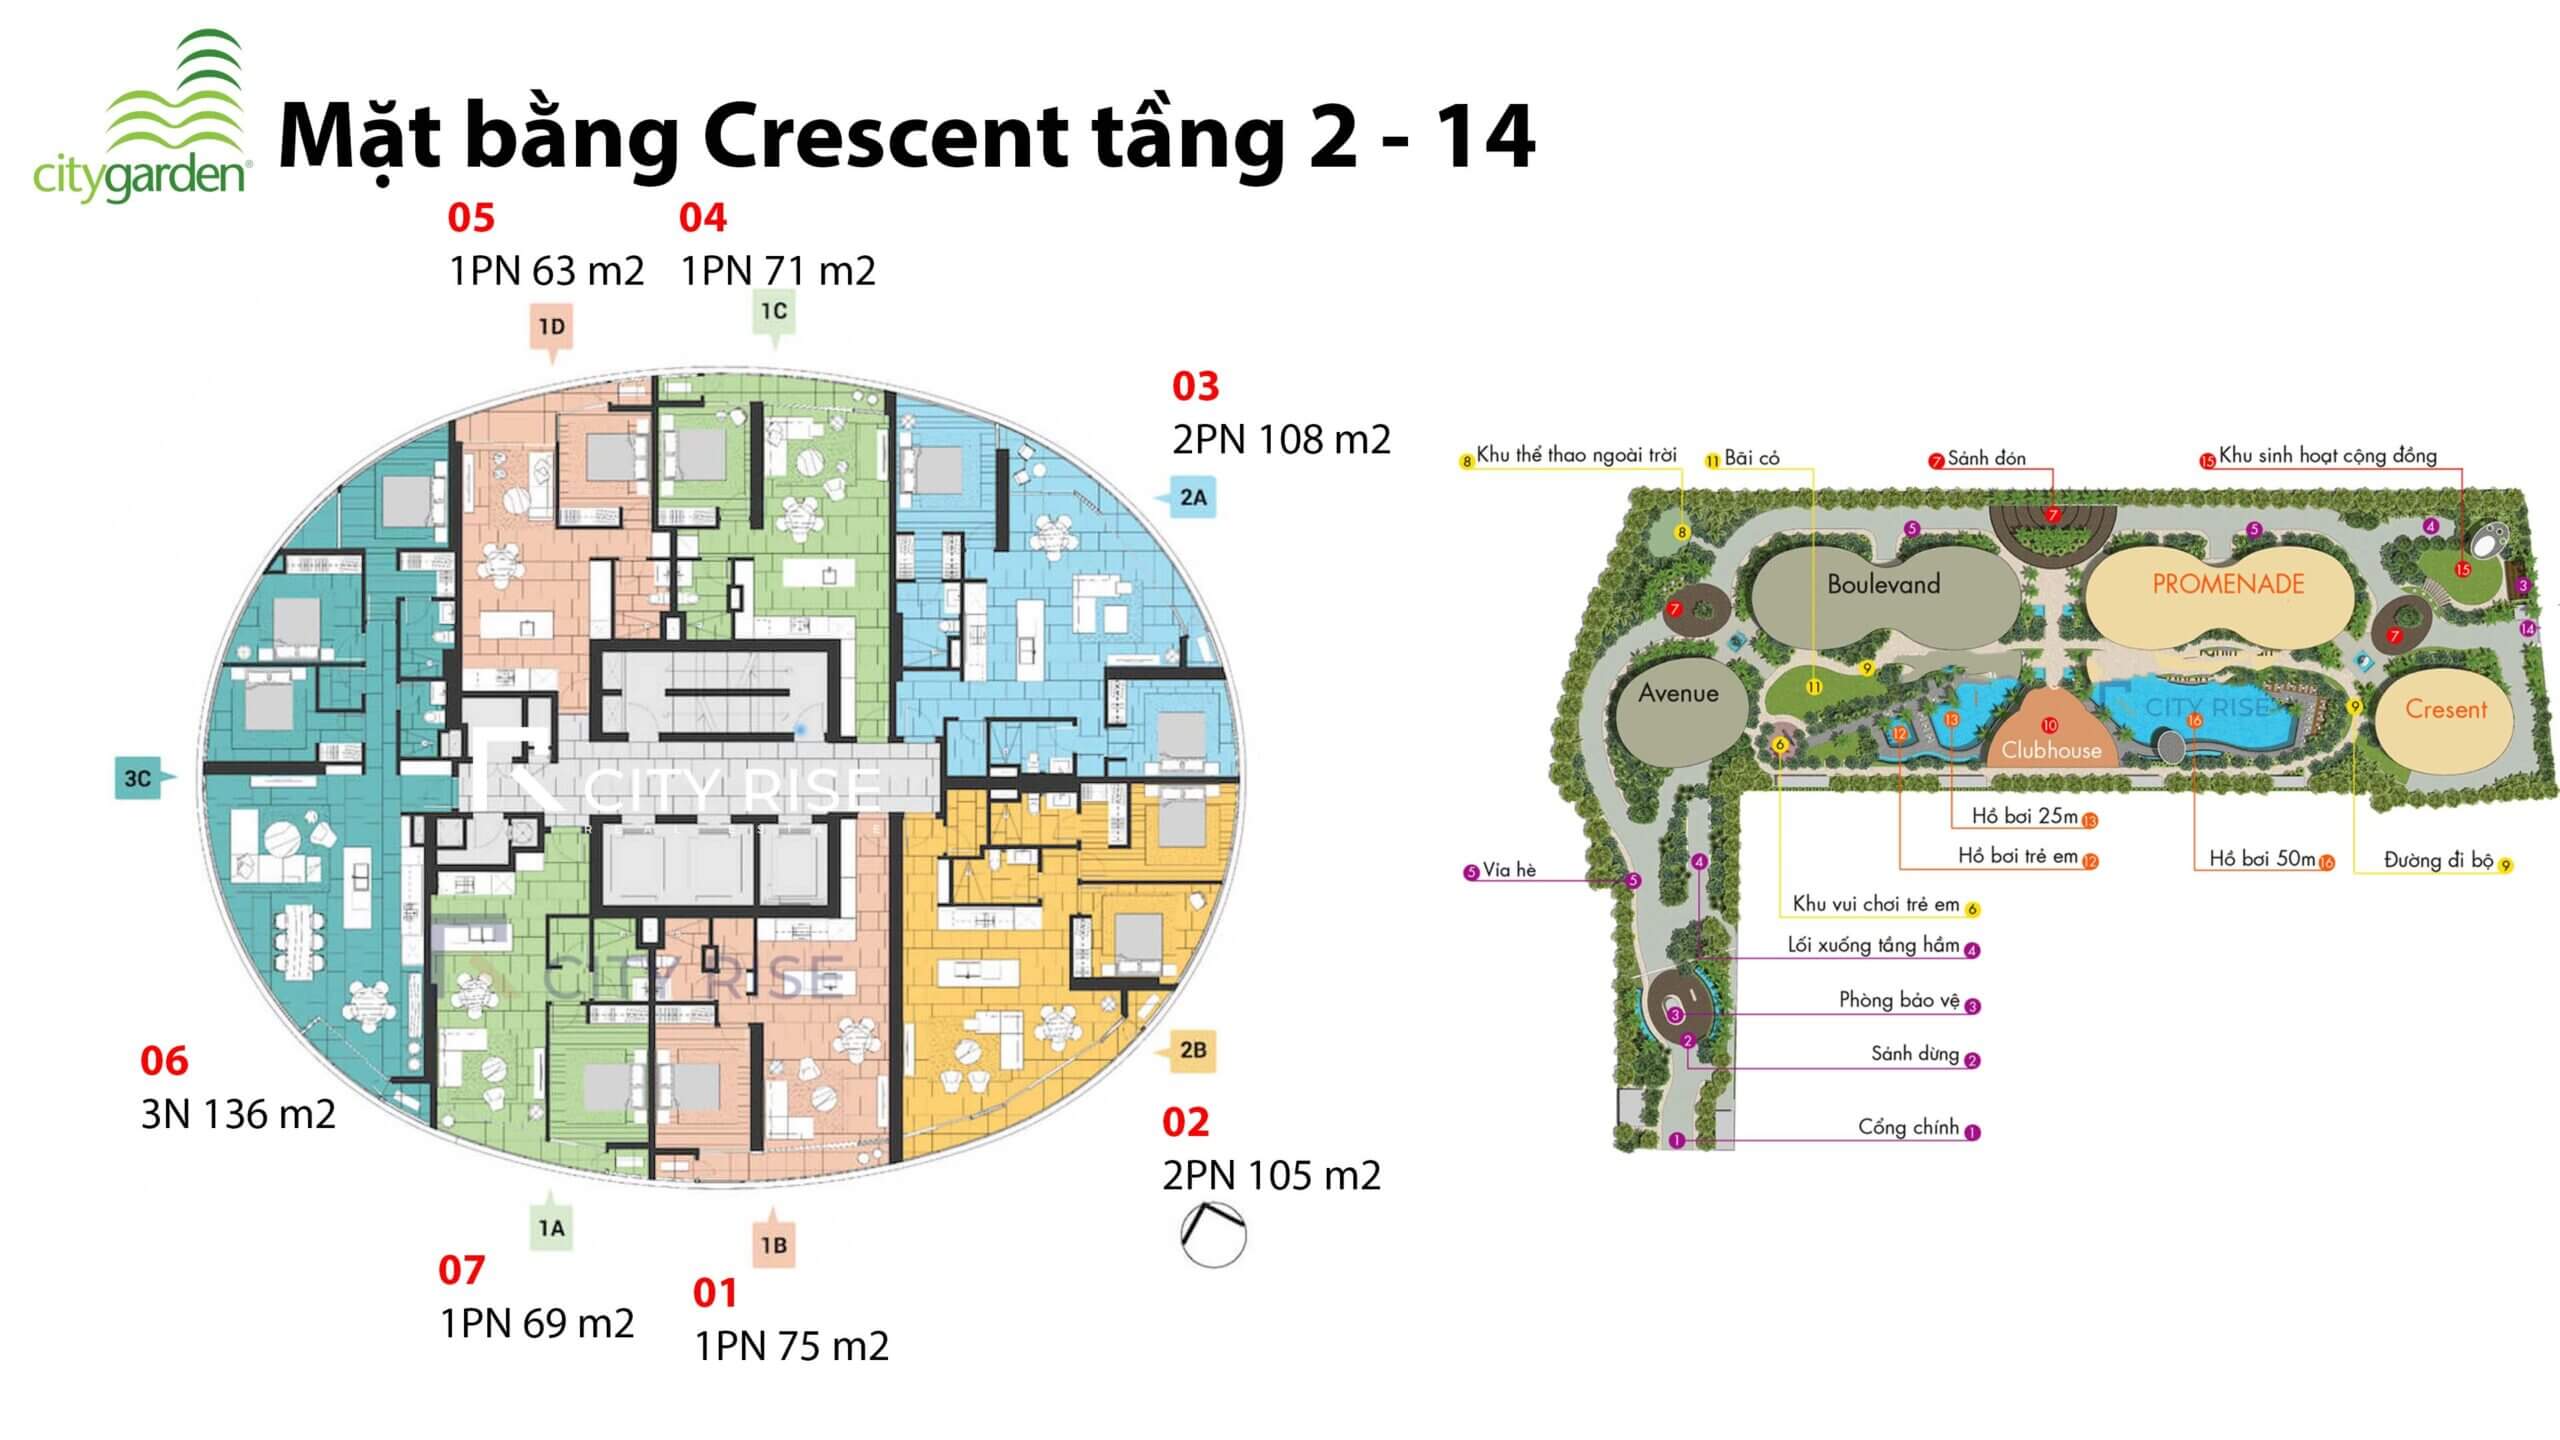 Mặt bằng căn hộ Crescent chung cư City Garden Bình Thạnh tầng 2-14